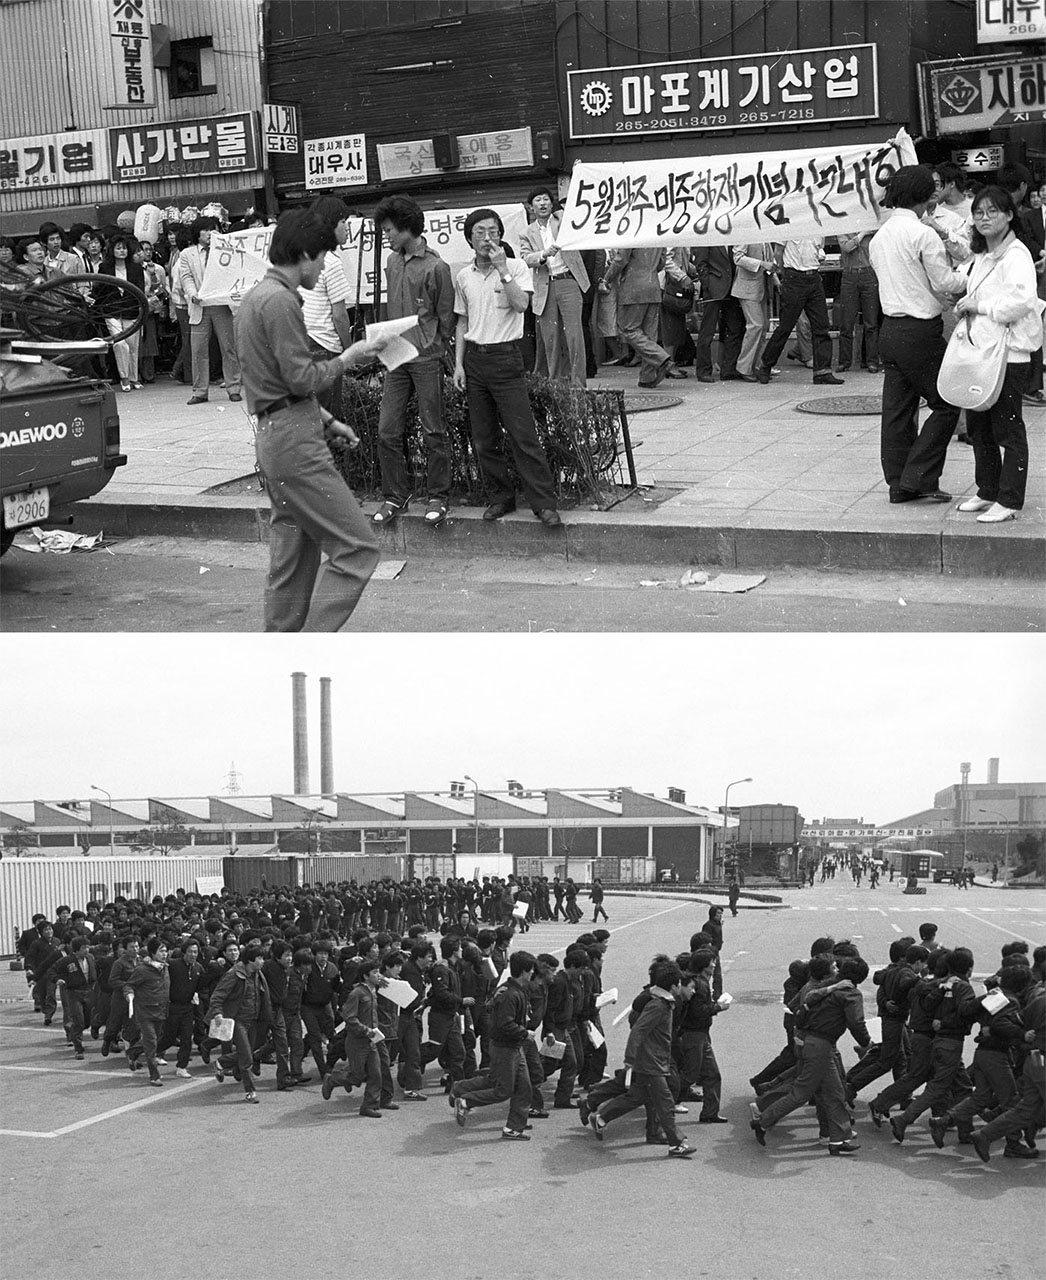 공개정치투쟁과 노동현장운동의 한 단면. 1984년 서울 시내 한복판에서 공개정치투쟁을 벌이는 민청련(위 사진)과 대우자동차 부평공장 파업 현장 모습(아래 사진).
